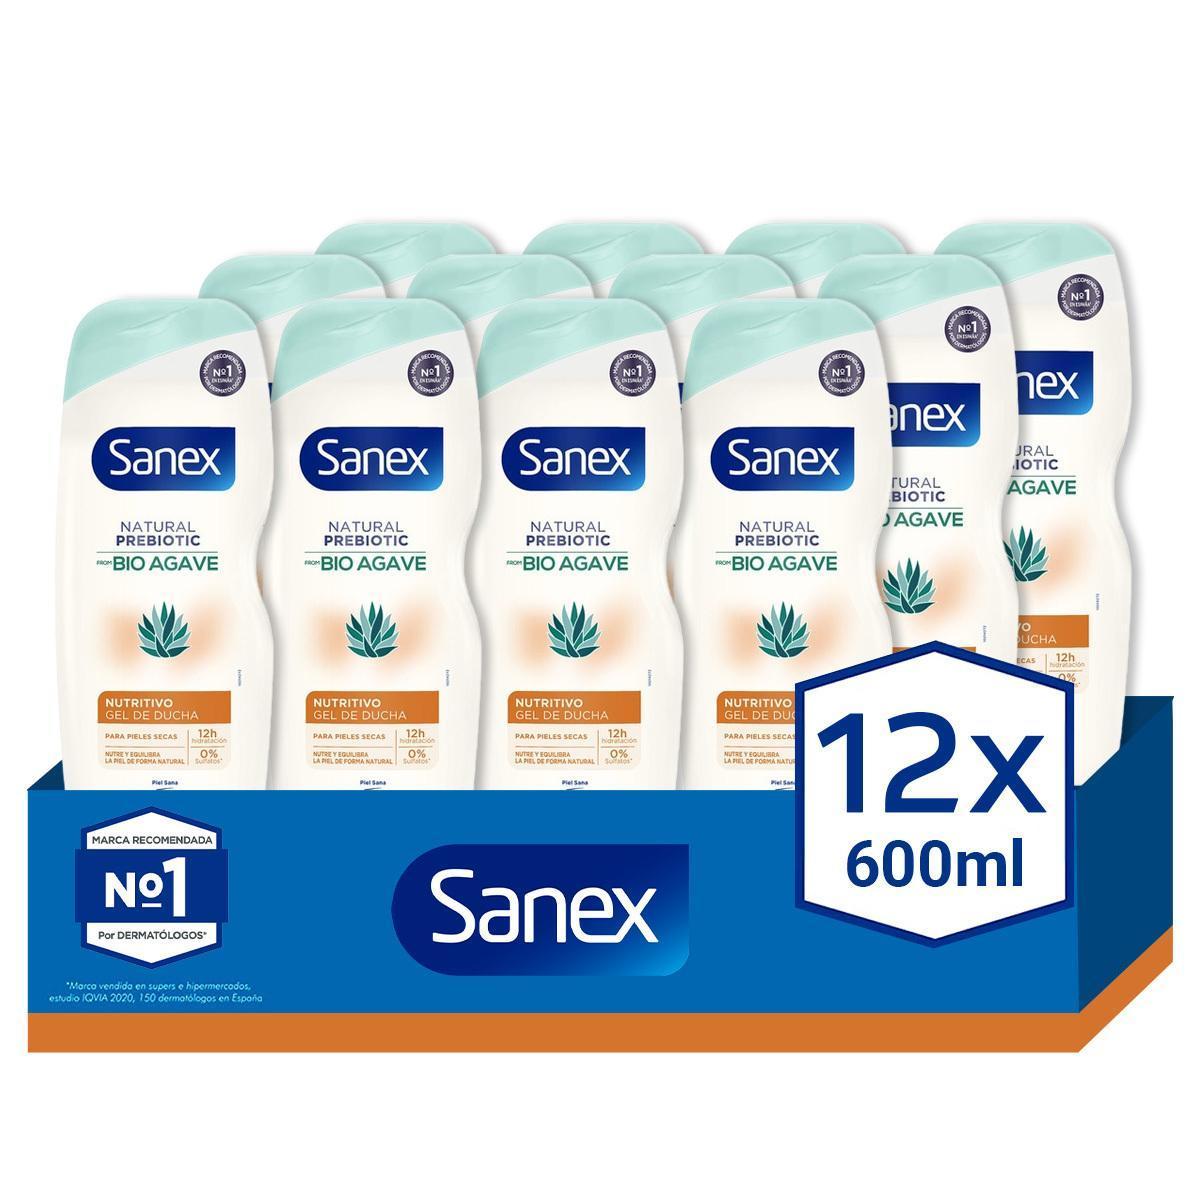 Sanex - Gel de ducha o baño SANEX Natural Prebiotic de Bio Agave hidratante 600ml